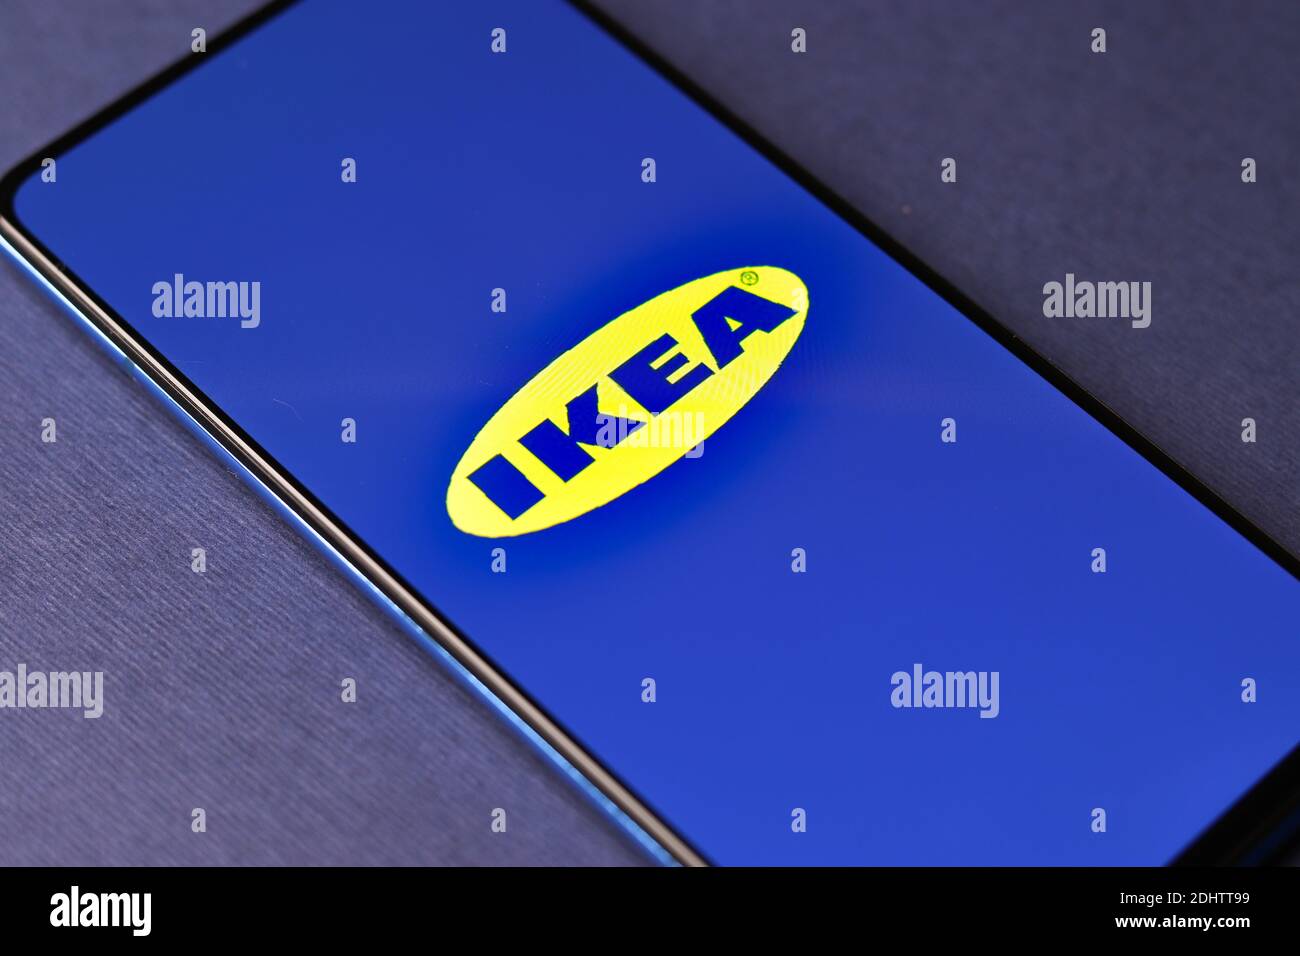 Assam, inde - 20 décembre 2020 : logo Ikea sur image de stock d'écran de téléphone. Banque D'Images